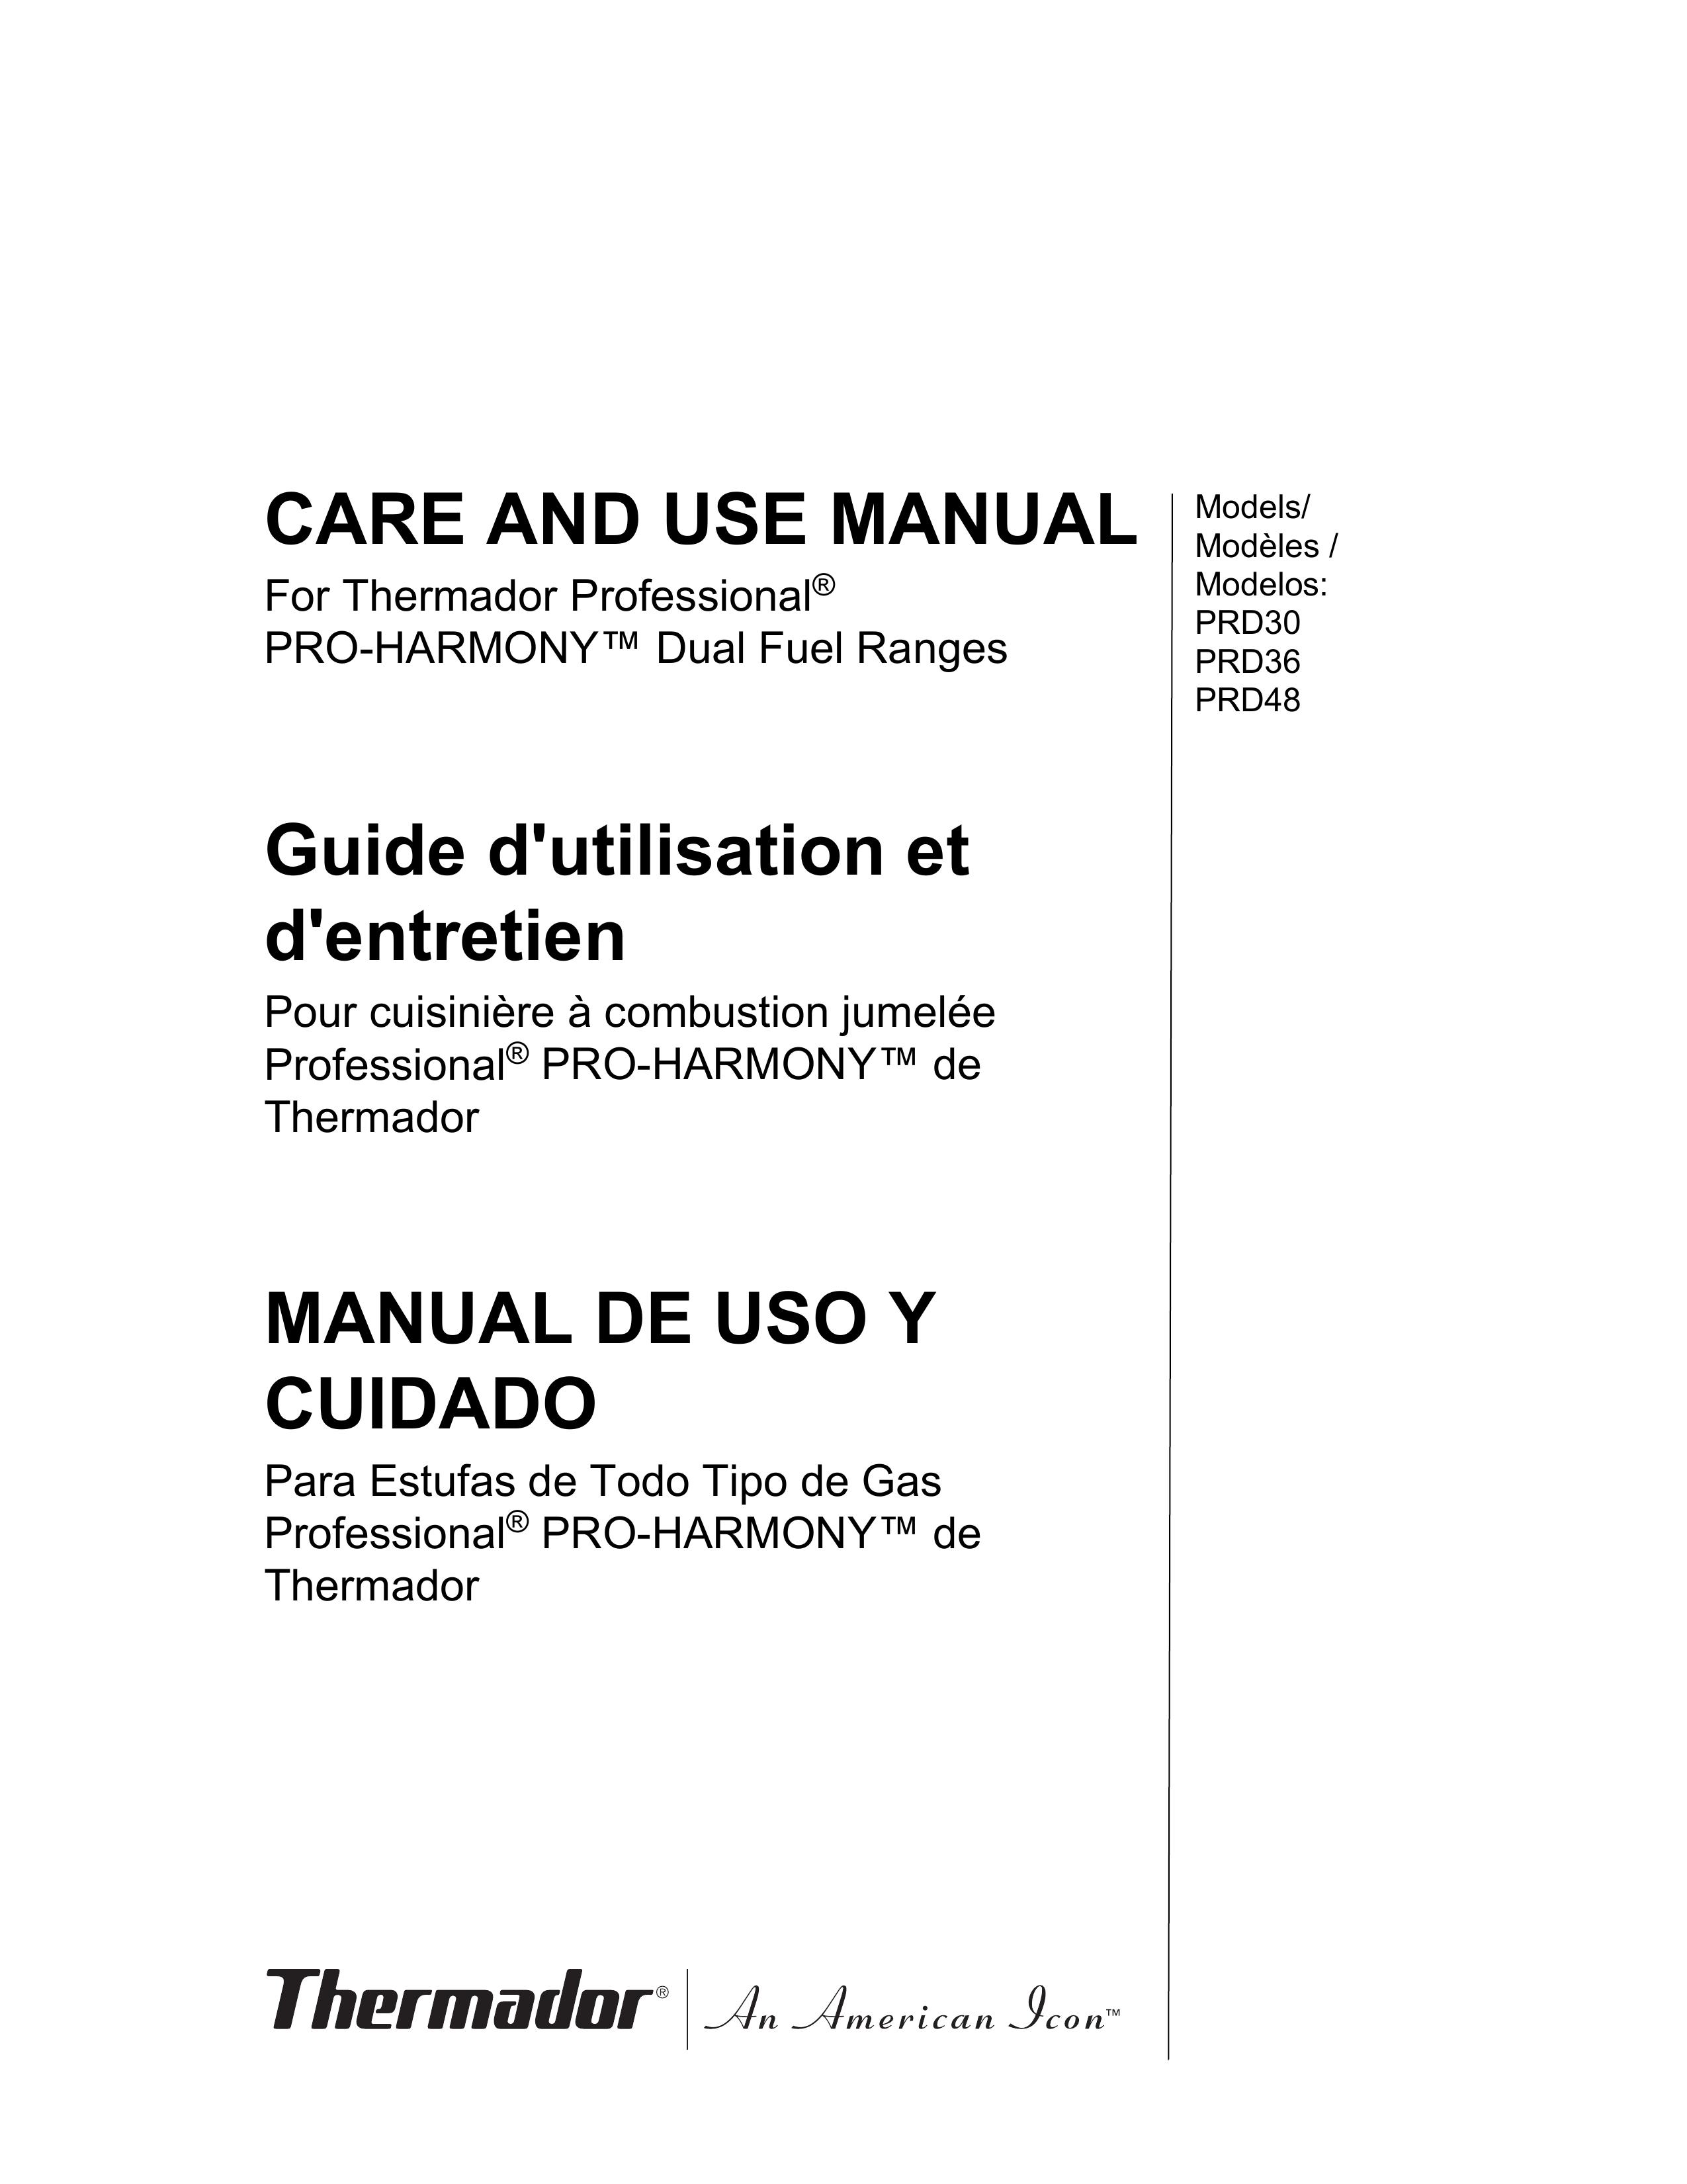 Thermador PRD30 Range User Manual